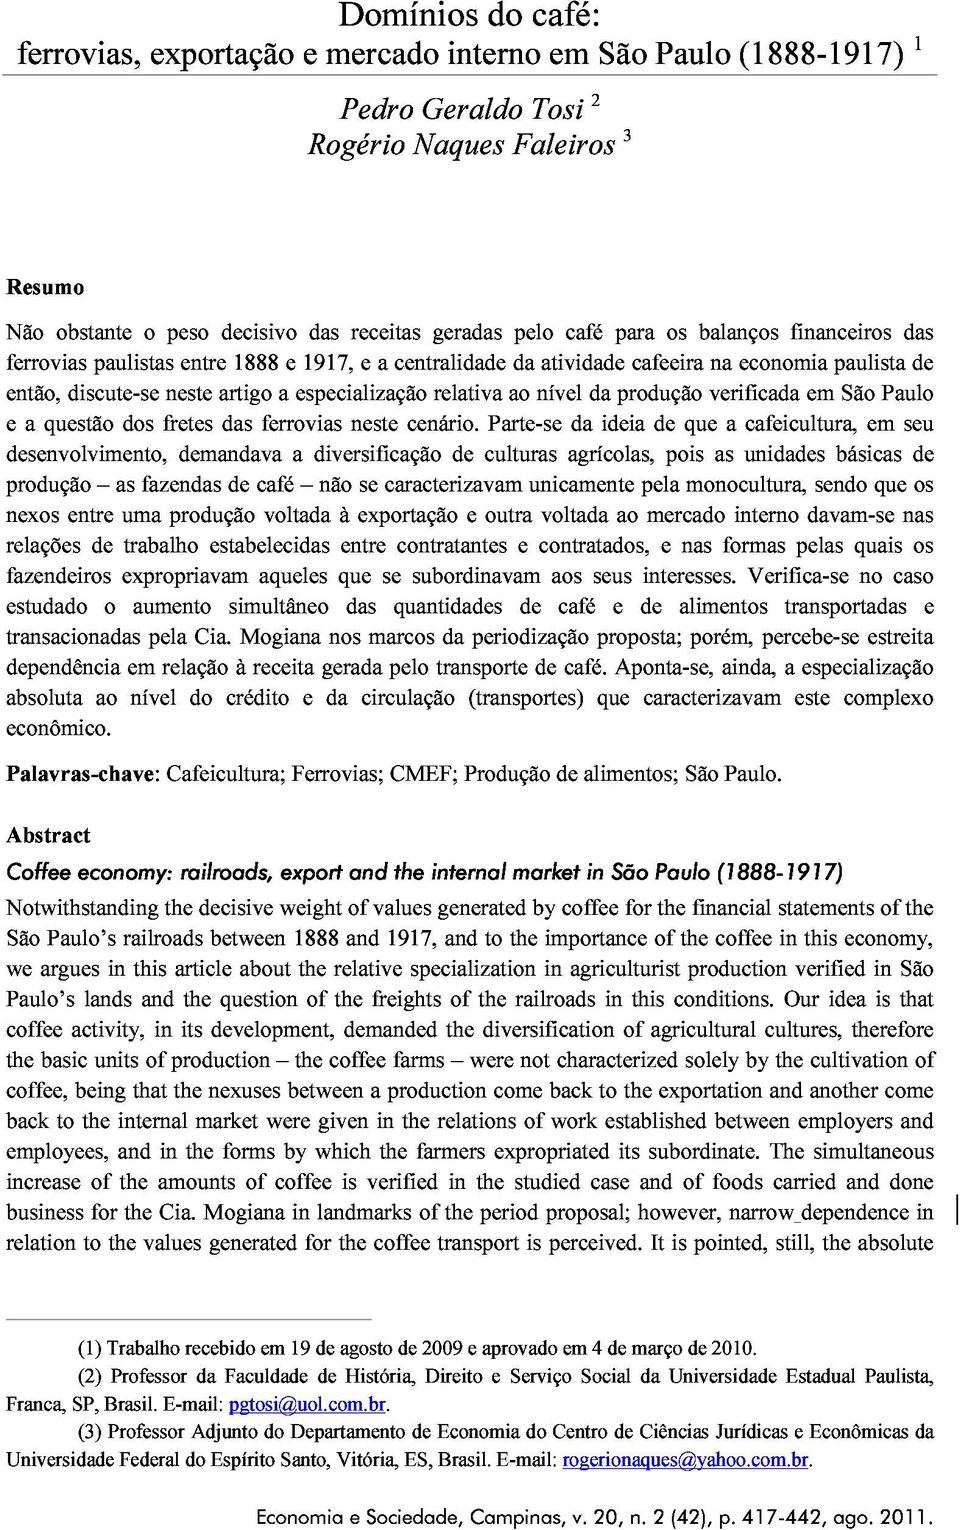 especialização relativa ao nível produção verificada em São Paulo nexos a questão dos fretes das ferrovias neste cenário.